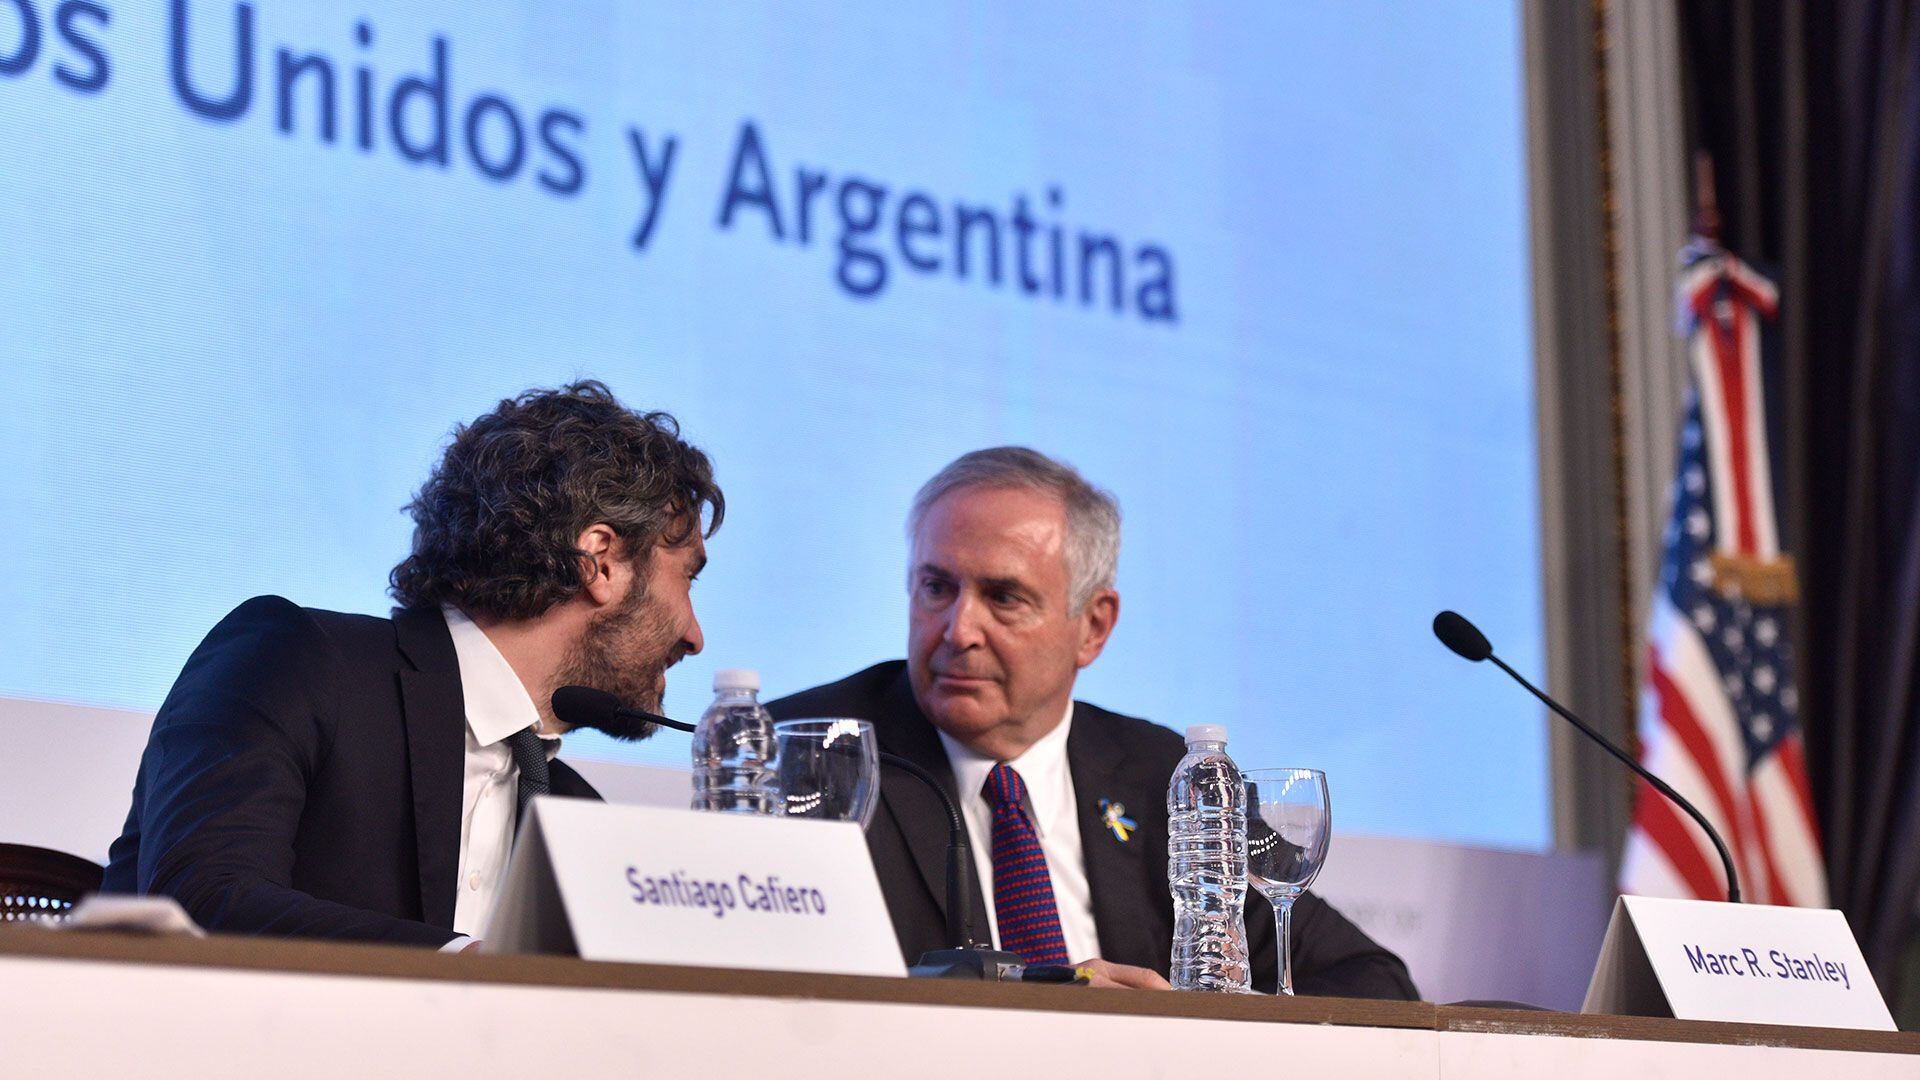 El canciller Santiago Cafiero defendió el ingreso de la Argentina a los BRICS, tras la crítica opositora (Adrián Escándar)